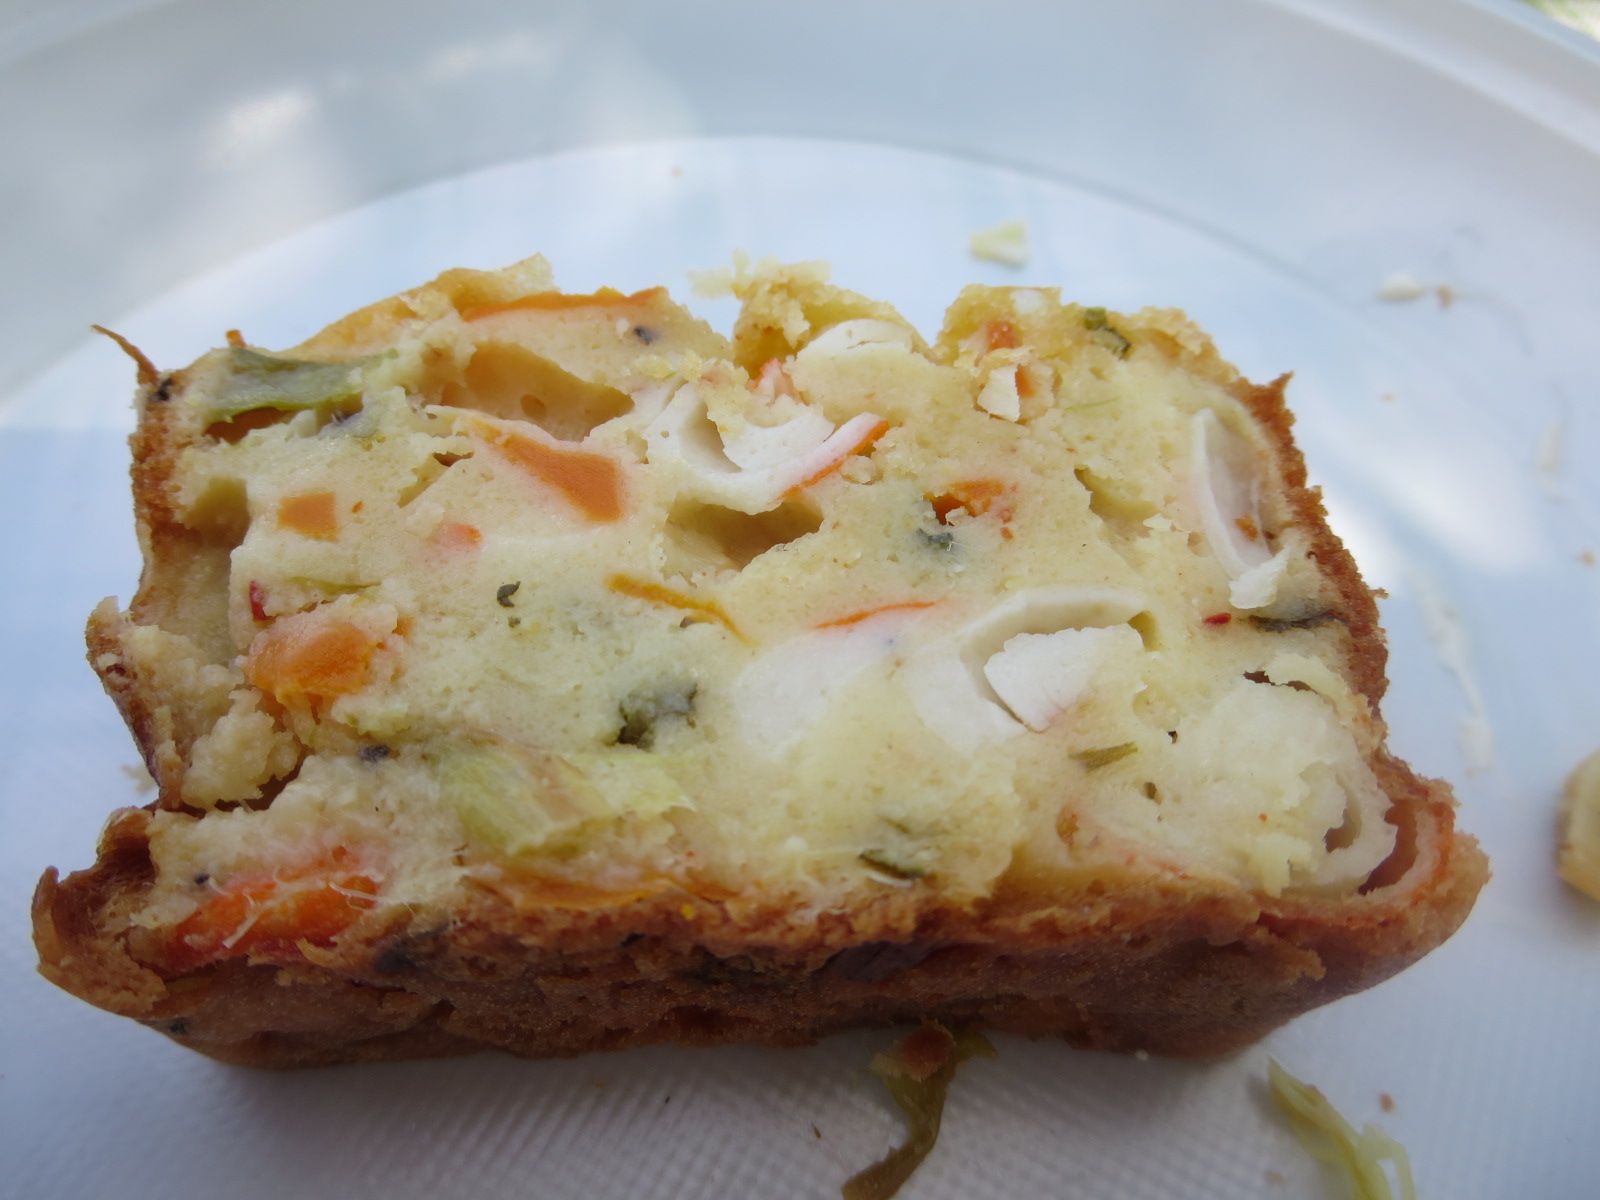 Le traditionnel cake de pique-nique... celui-ci est aux asperges vertes, oignons nouveaux bulbes et tiges, carottes nouvelles, bâtonnets de surimi, persil et piment d'Espelette